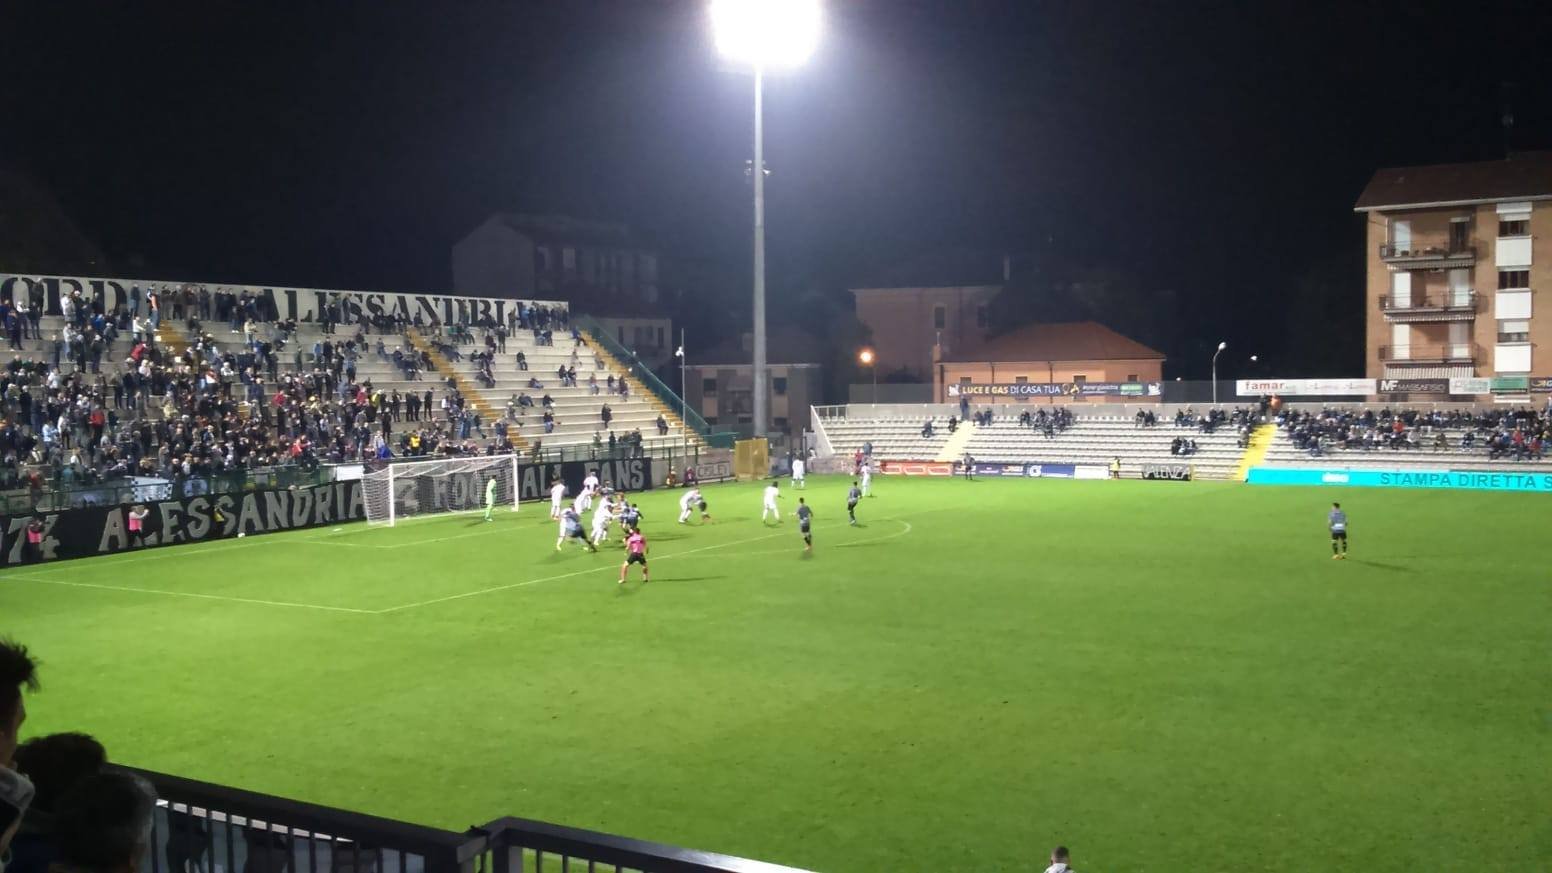 Alessandria-Gozzano 1-1 (FINALE)